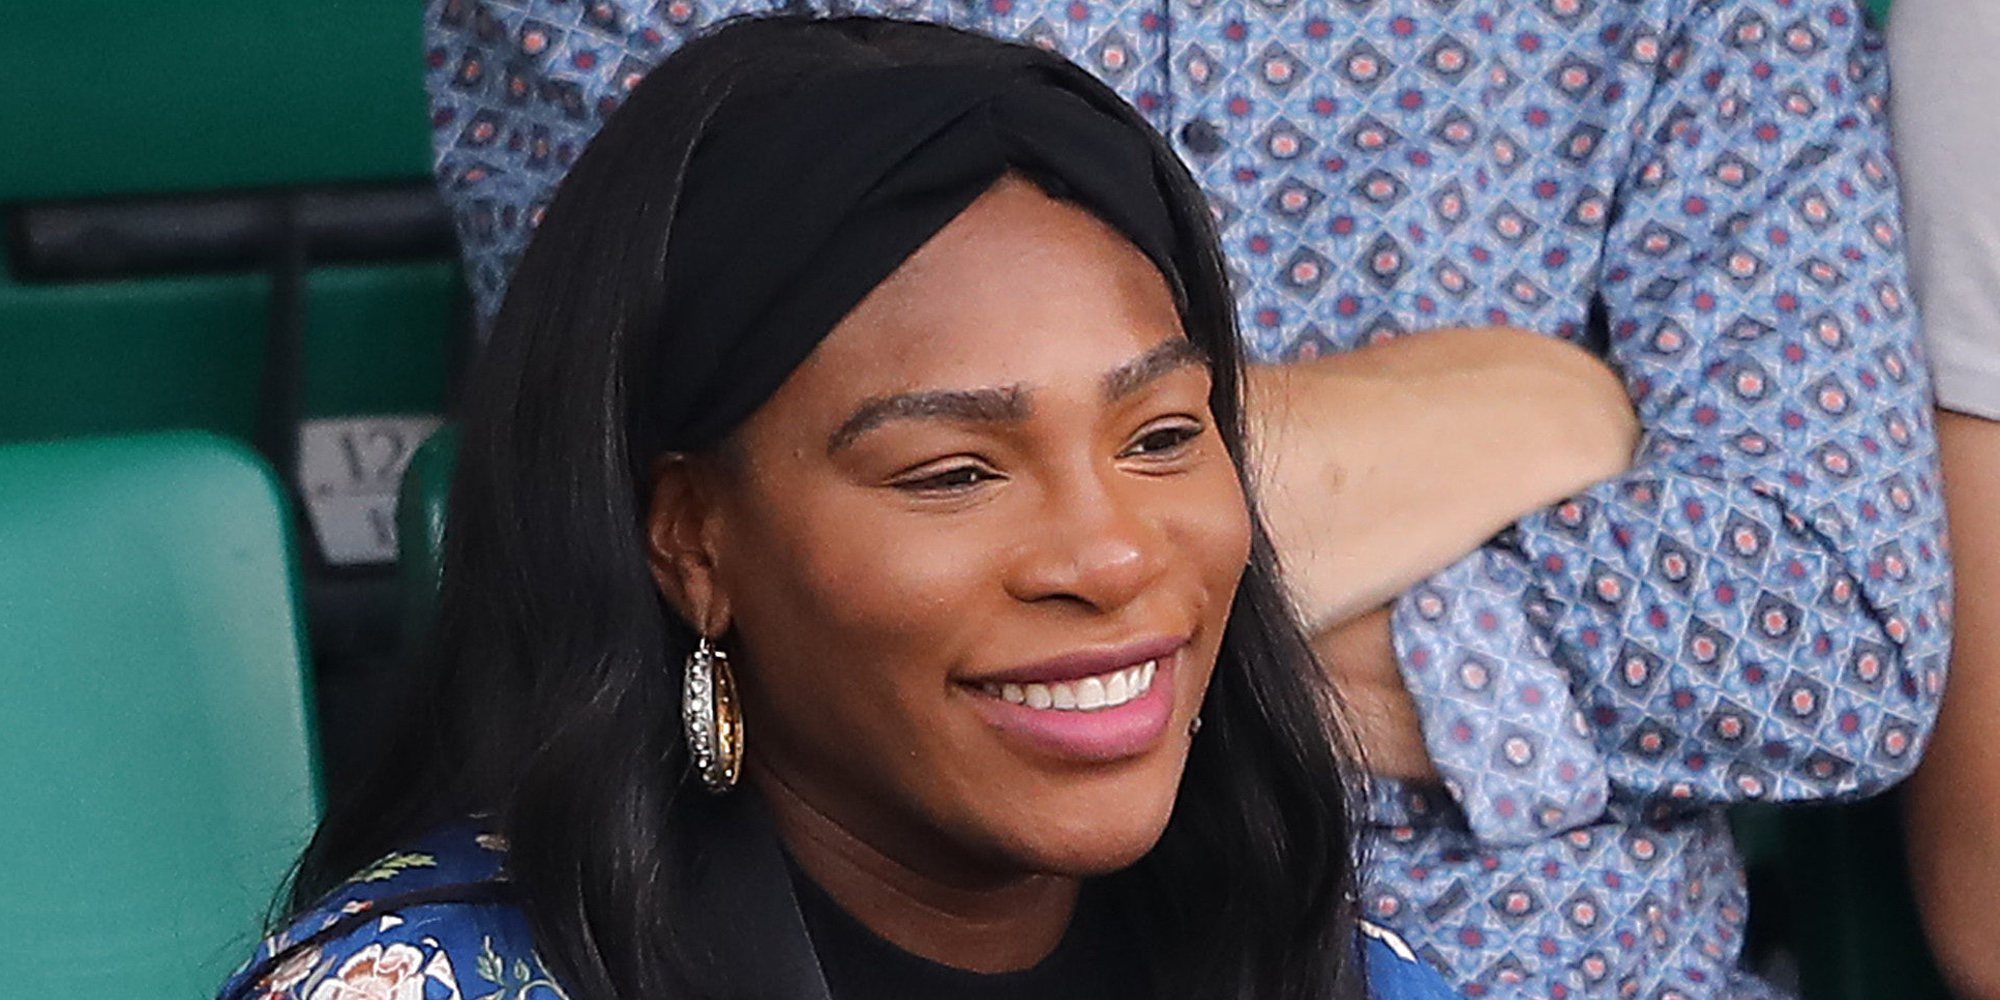 Serena Williams confiesa que podría haber muerto mientras daba a luz a su hija Olympia